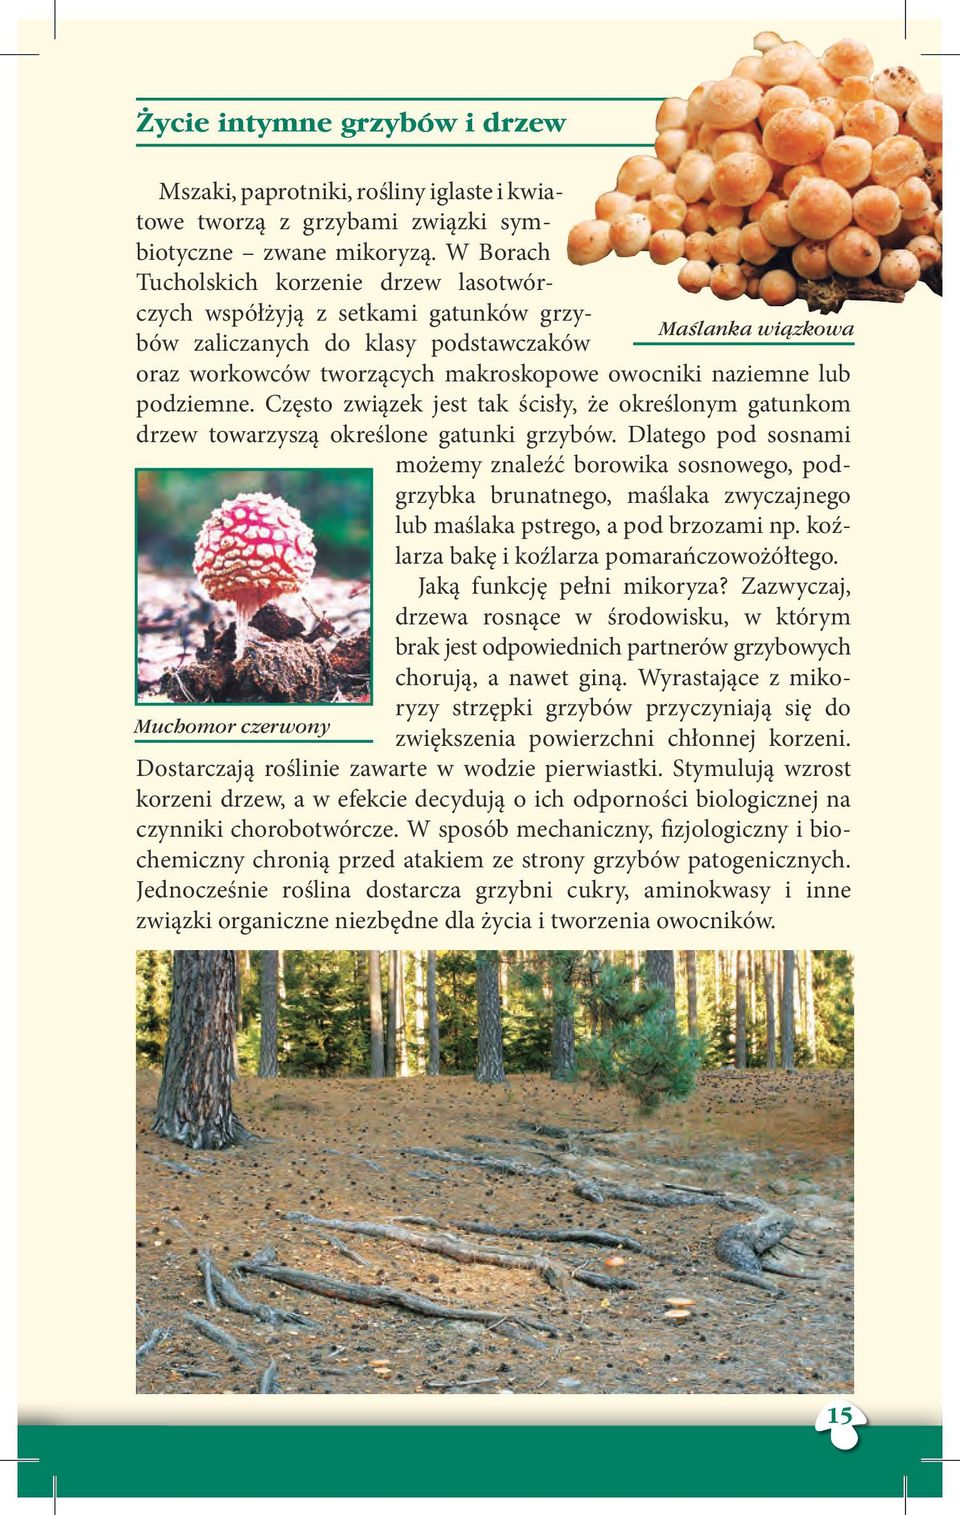 owocniki naziemne lub podziemne. Często związek jest tak ścisły, że określonym gatunkom drzew towarzyszą określone gatunki grzybów.